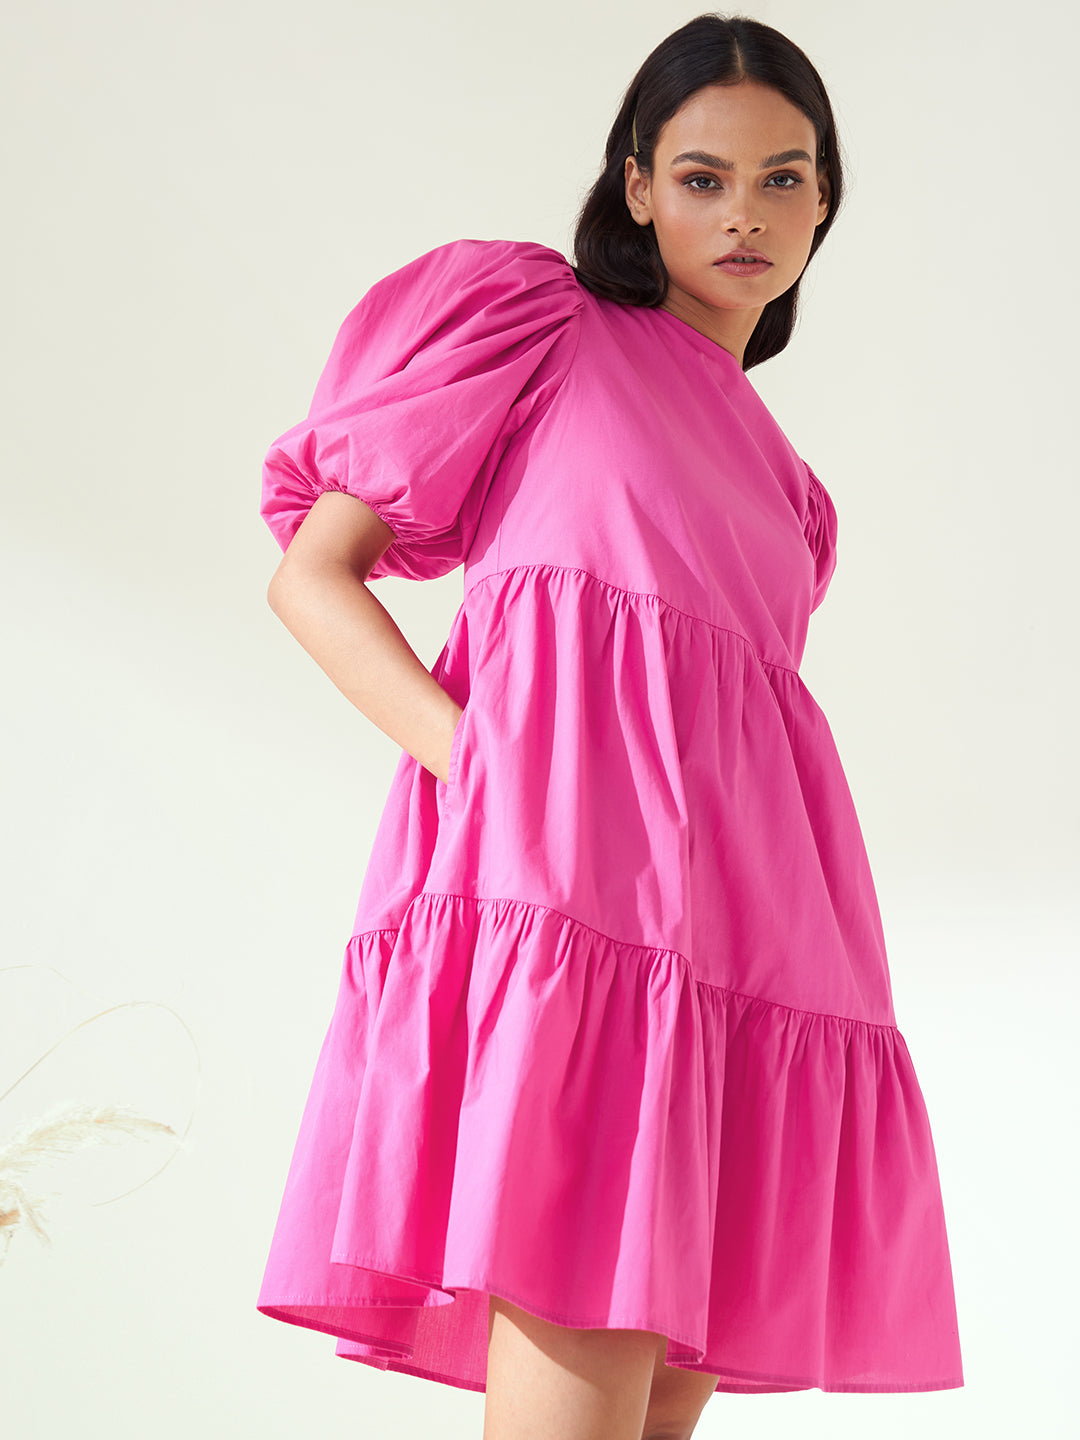 Pink Cotton Poplin Tiered Mini Dress